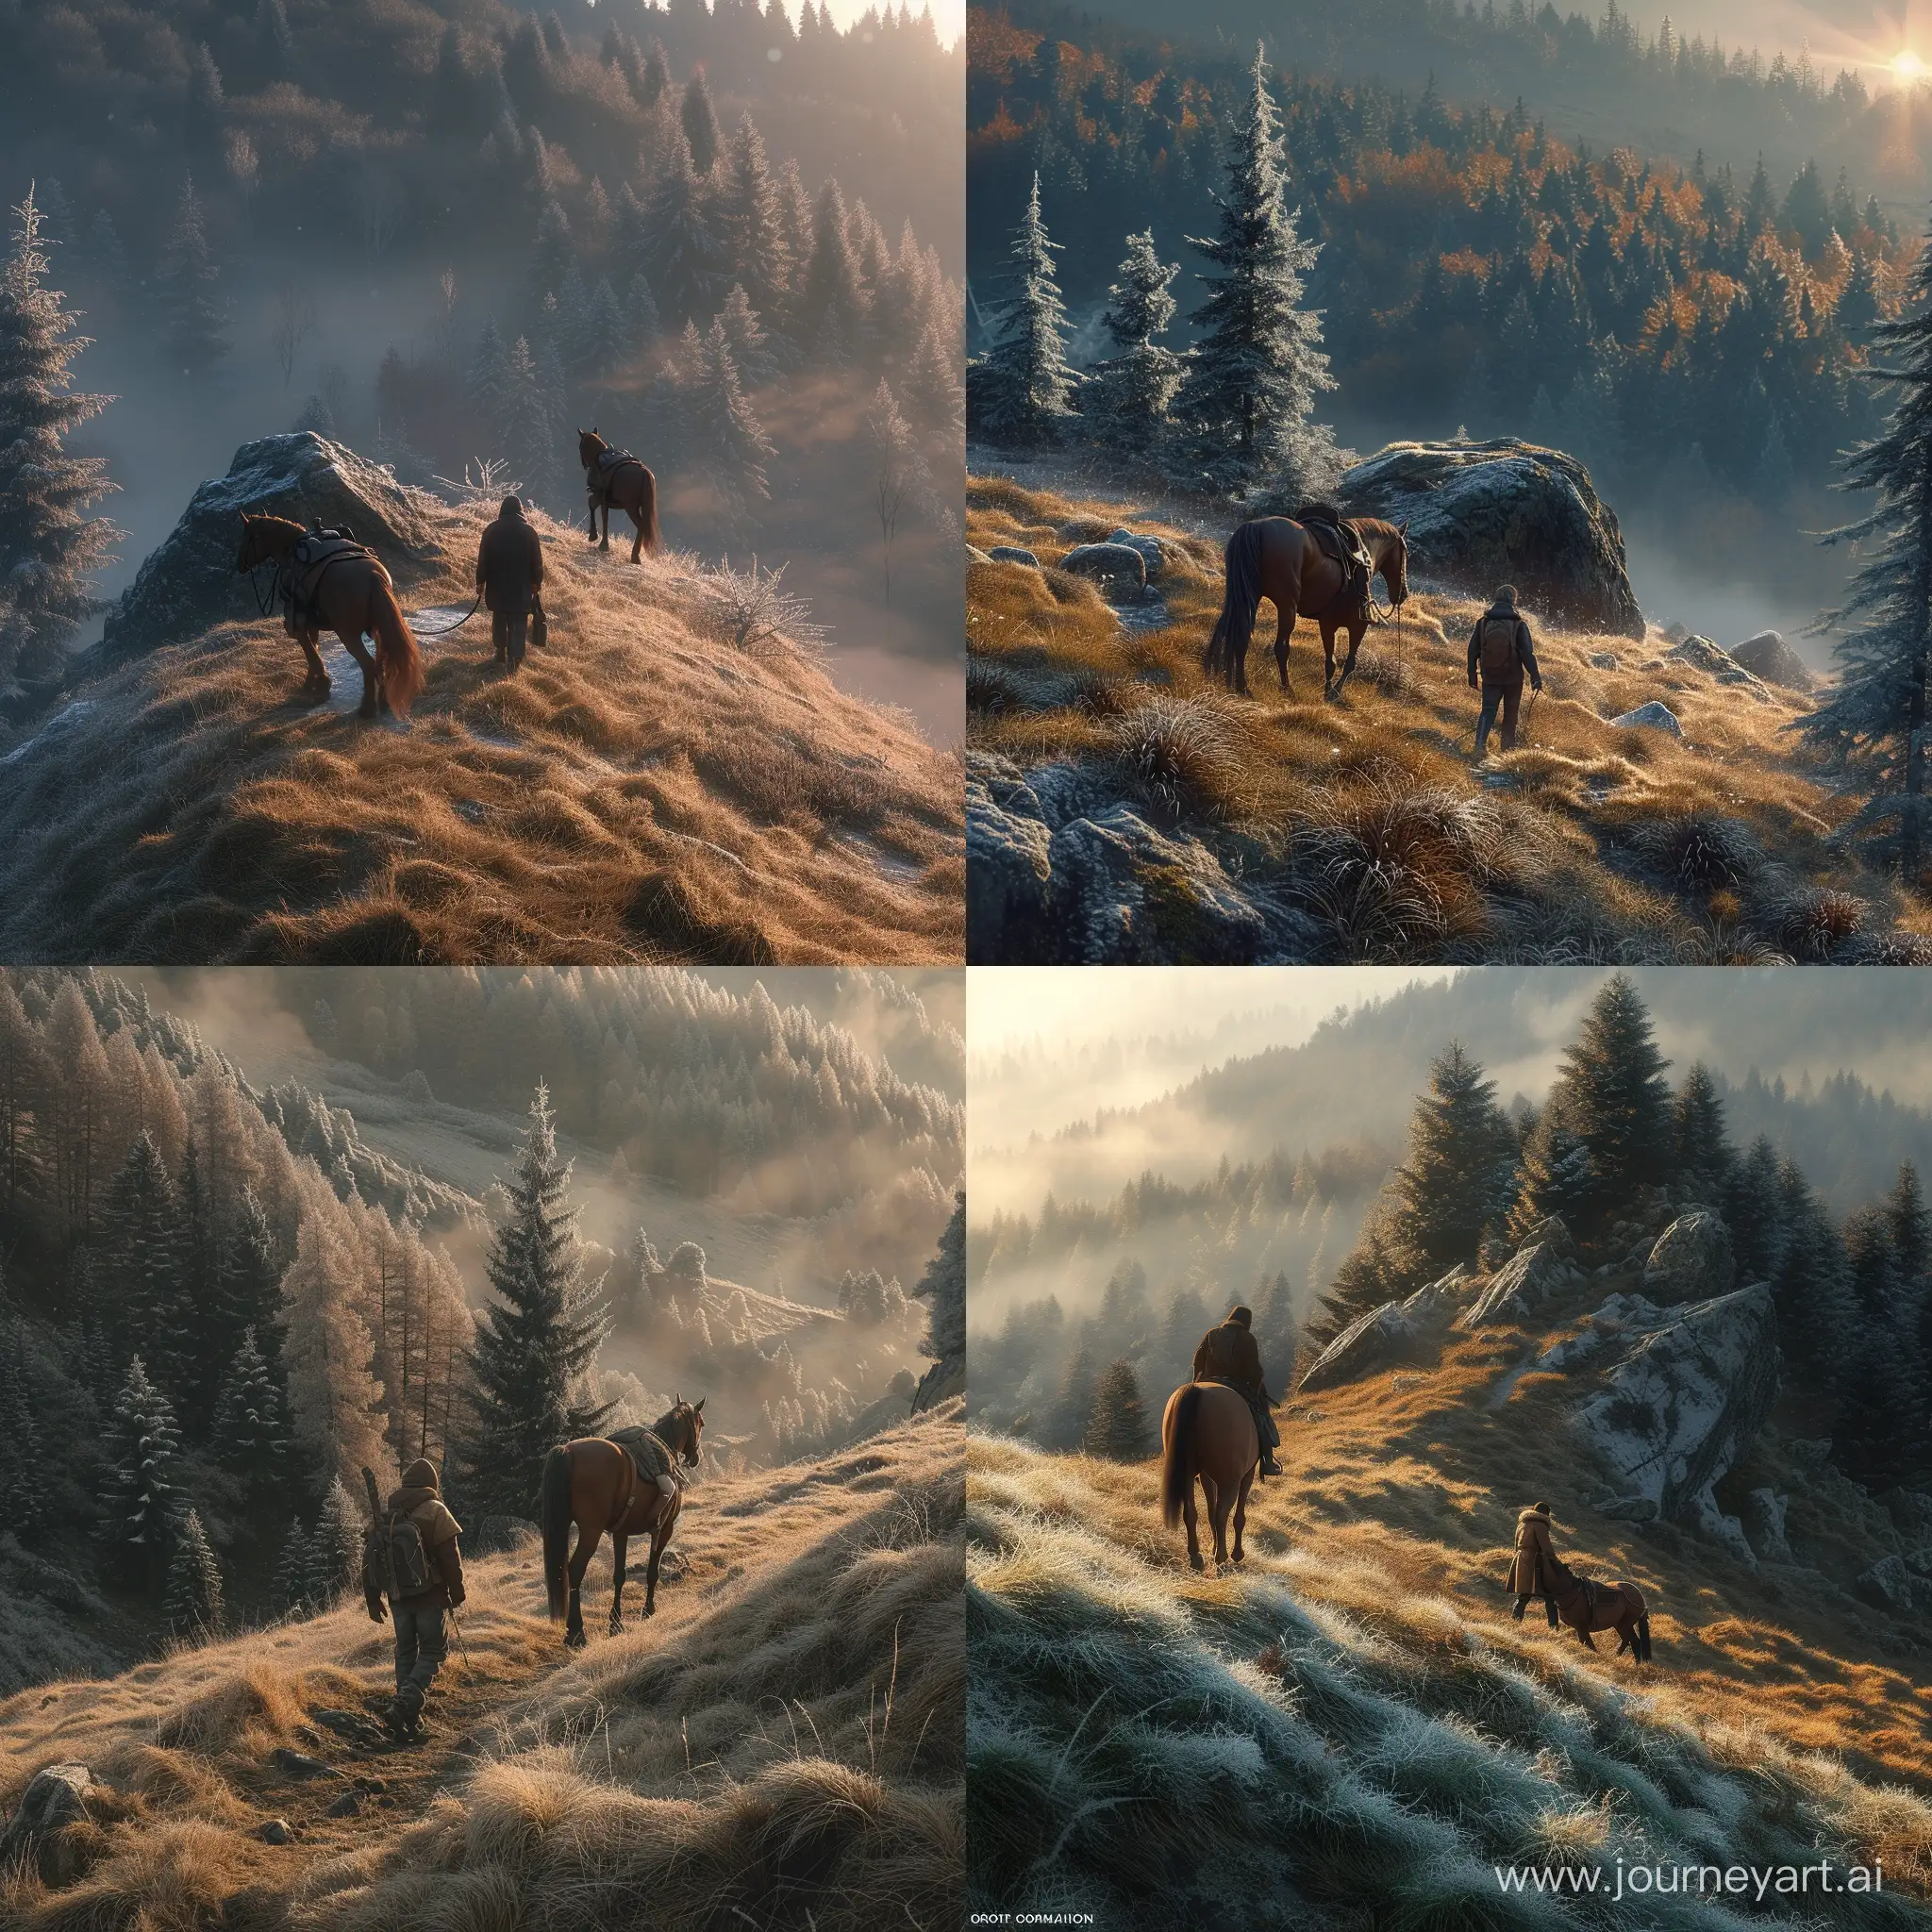 человек идет пешком с лошадью  на вершину горы, вокруг лес, солнце близится к рассвету, на травах  блестят иней